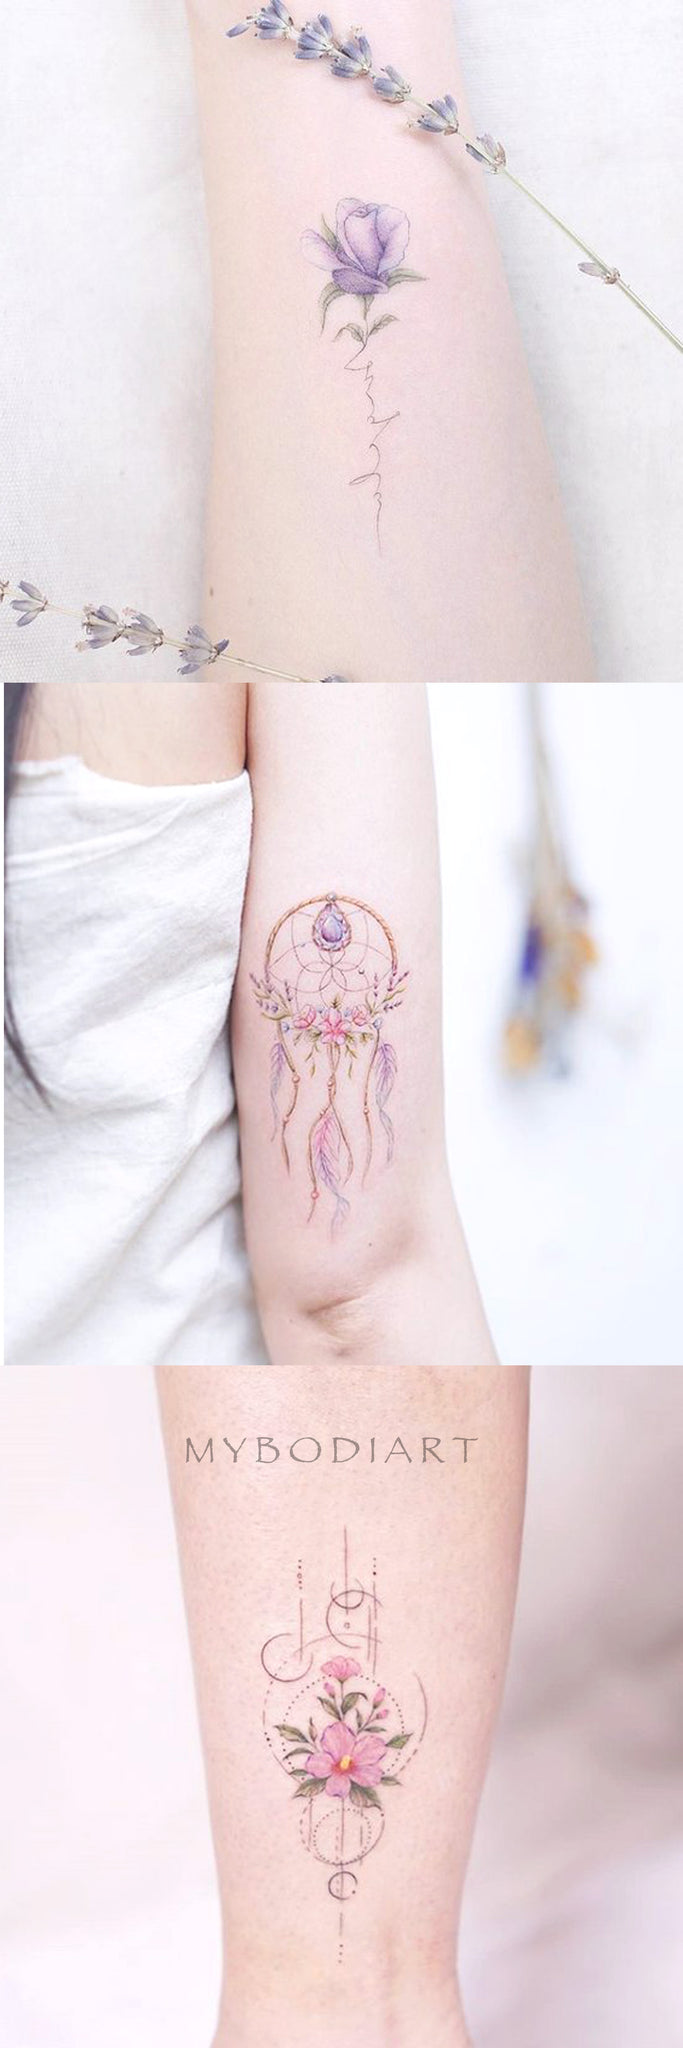 Cute Watercolor Floral Flower Arm Tattoo Ideas for Women -  Ideas de tatuaje de brazo de flor de acuarela lindo para mujeres - www.MyBodiArt.com 